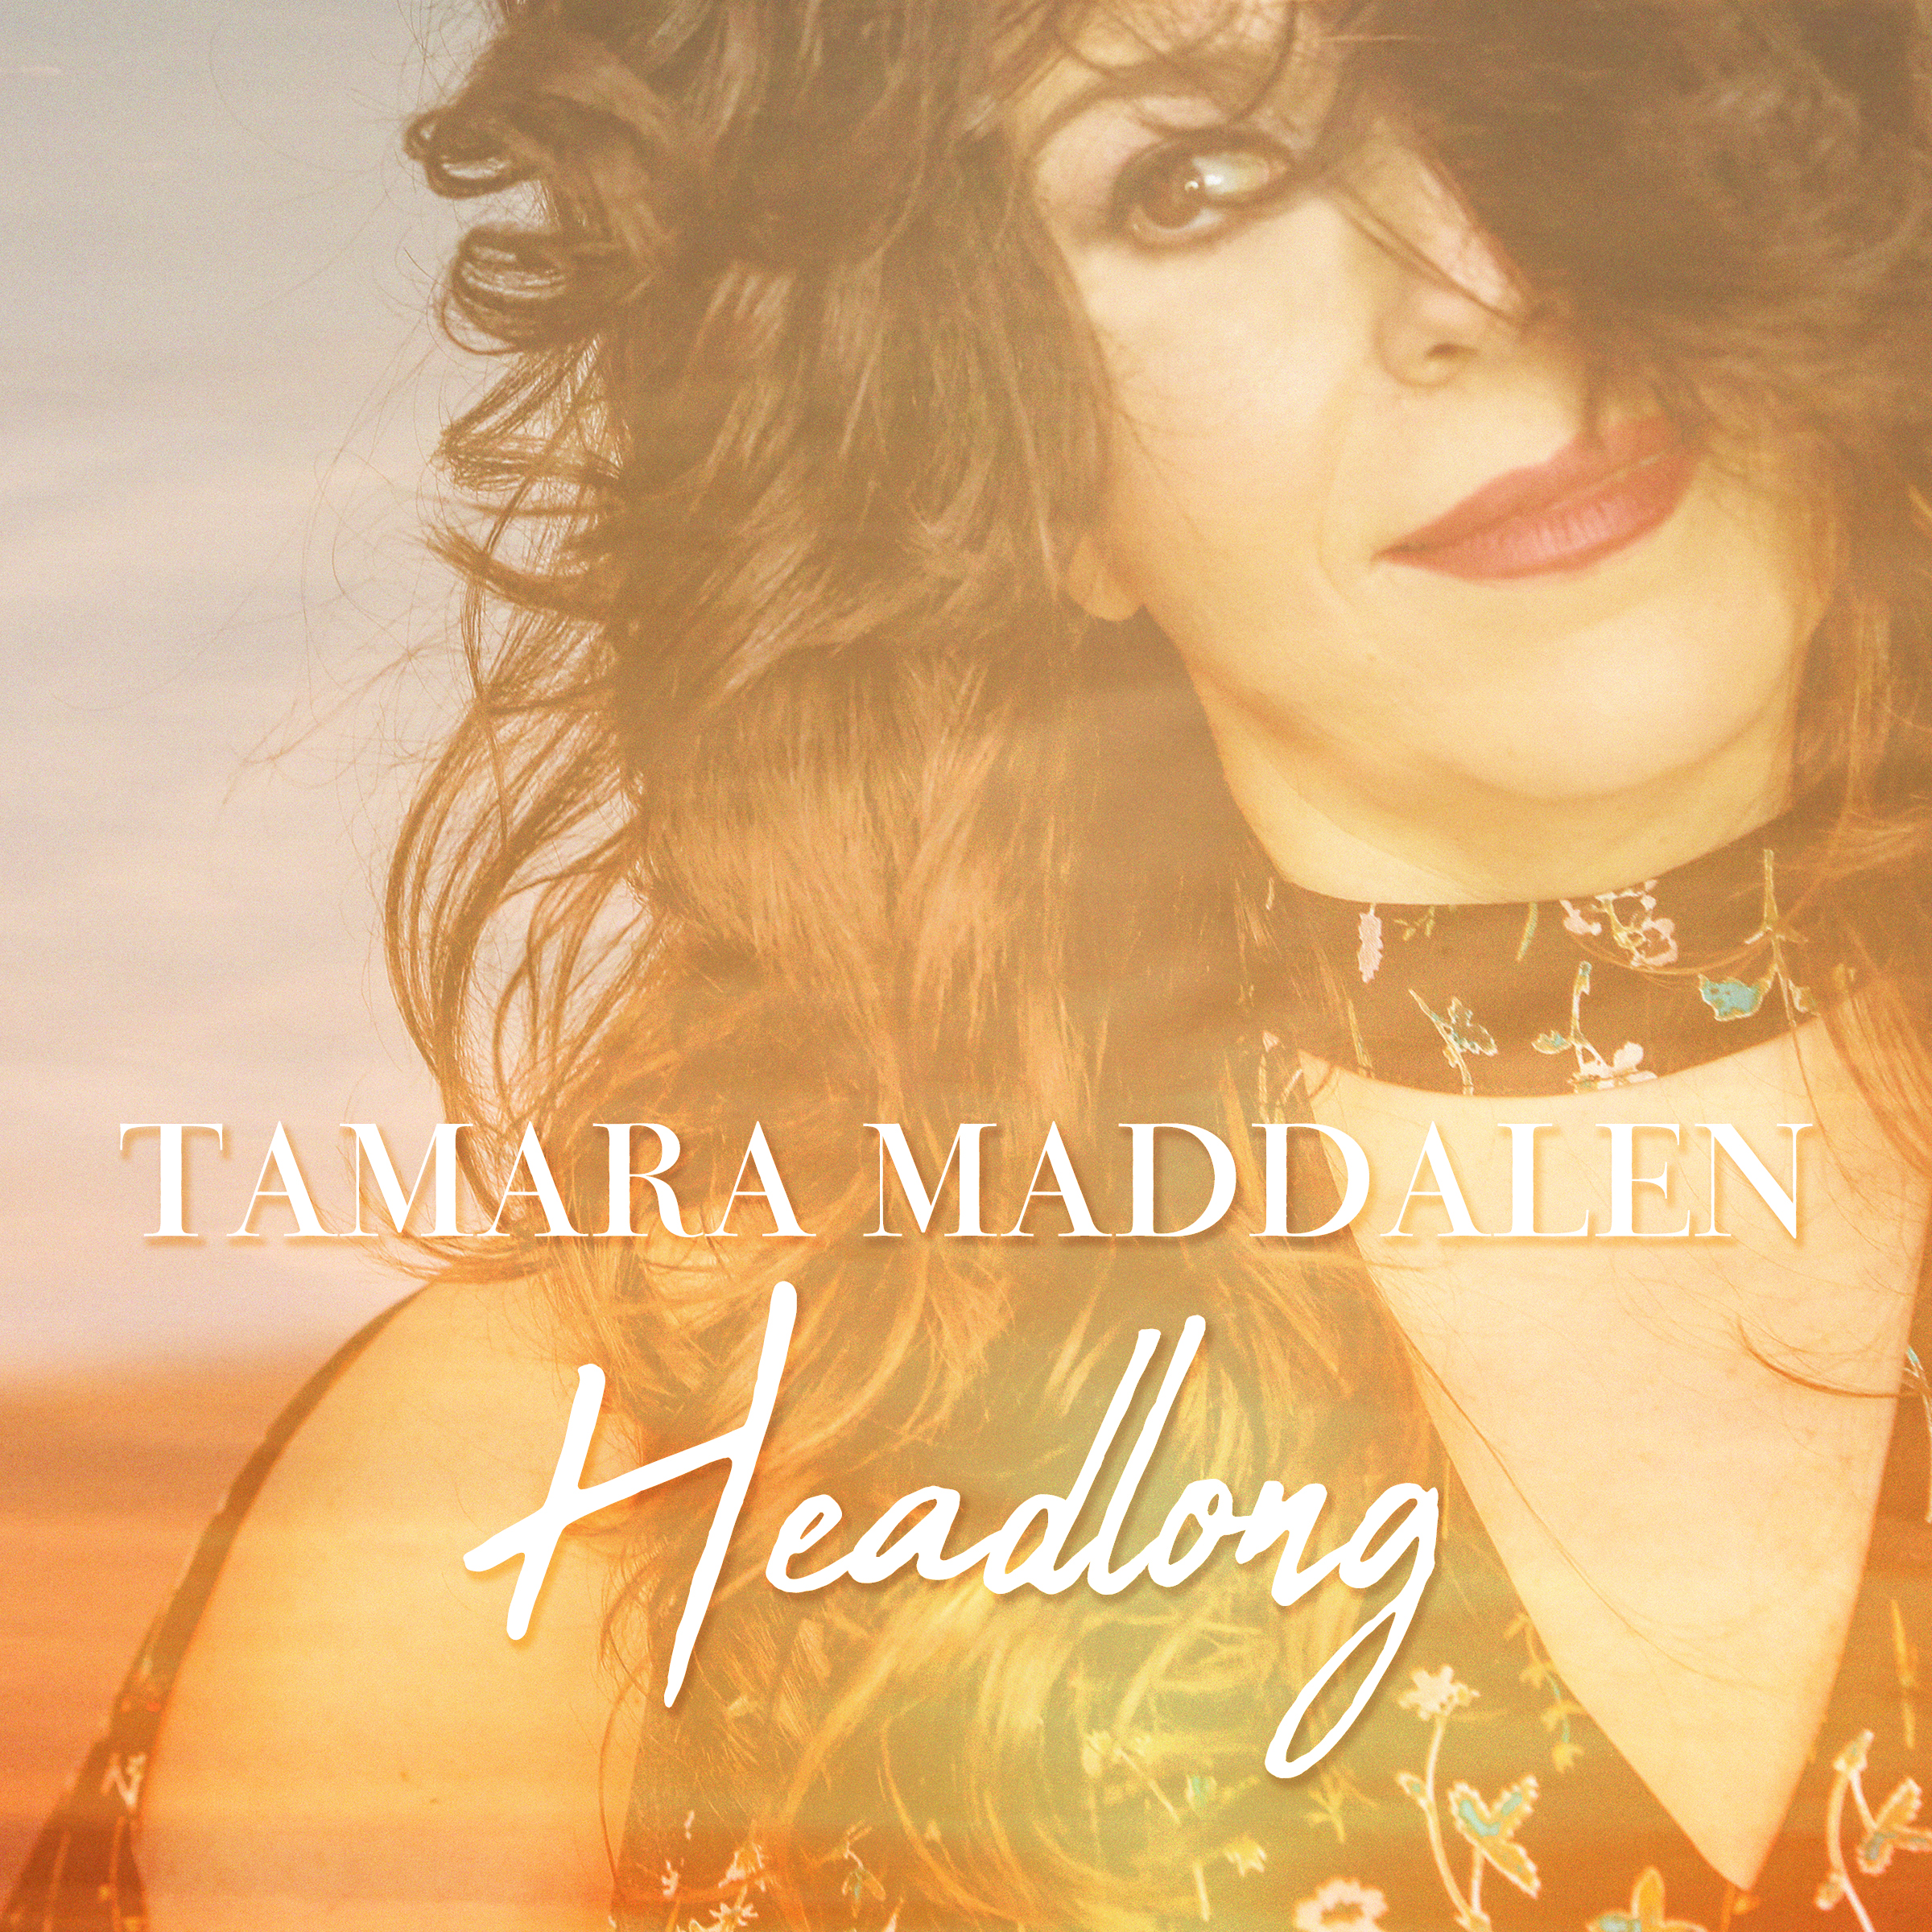 Tamara Maddalen - Headlong